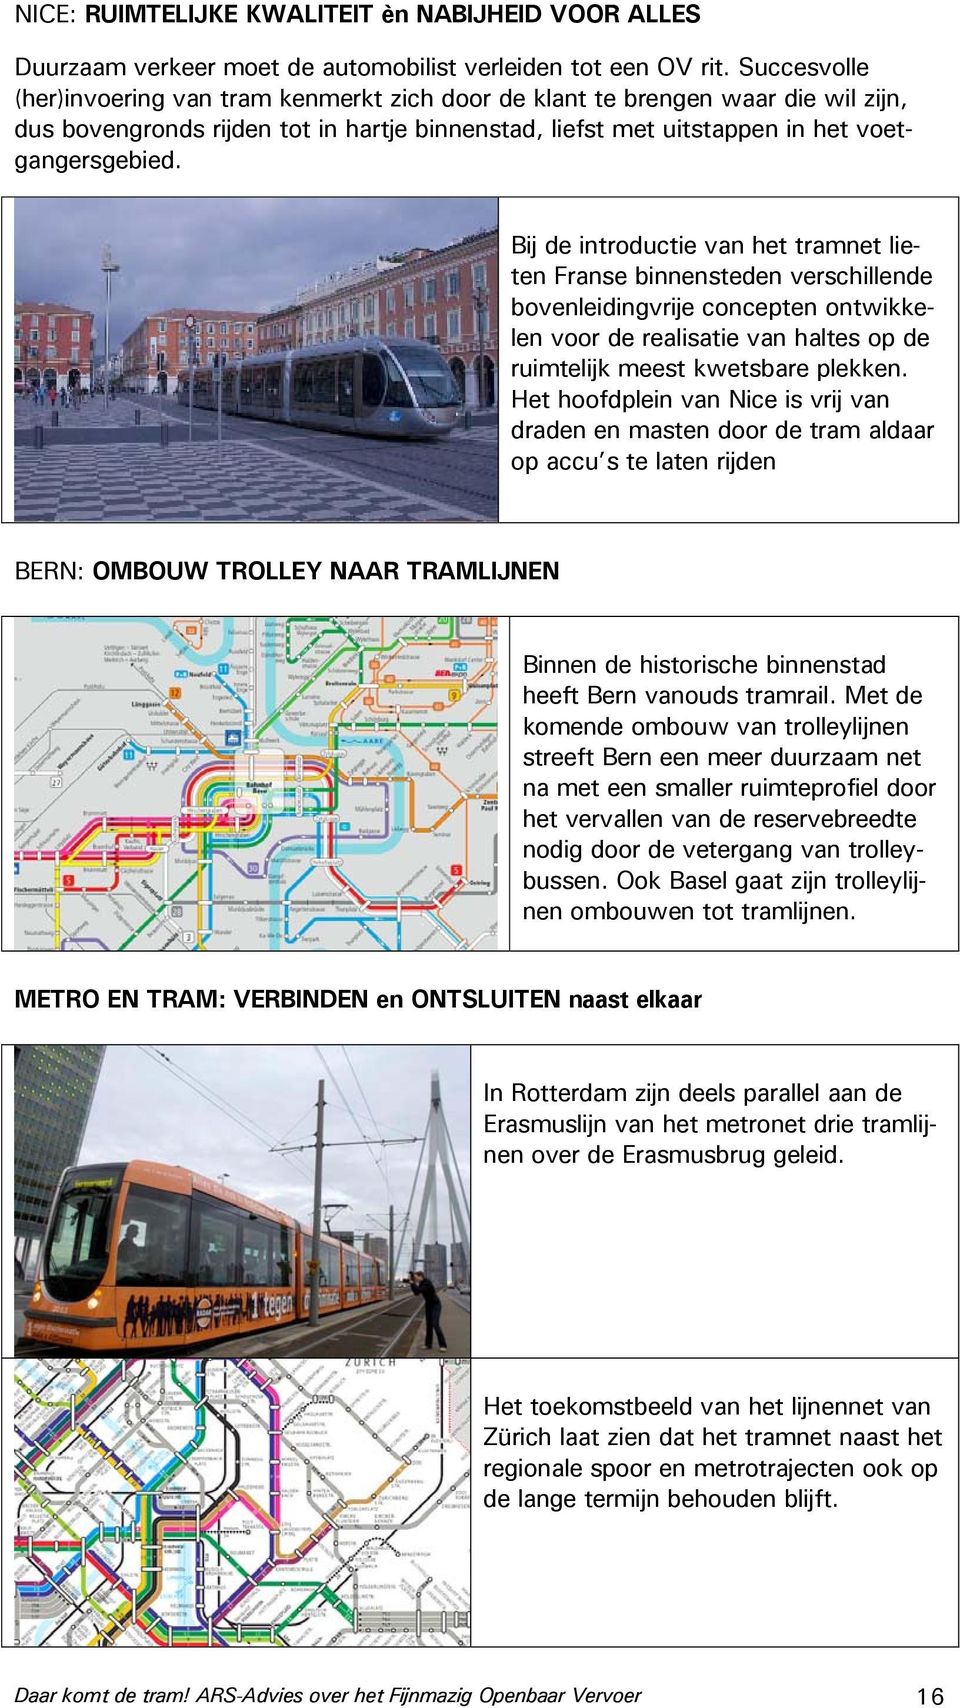 Bij de introductie van het tramnet lieten Franse binnensteden verschillende bovenleidingvrije concepten ontwikkelen voor de realisatie van haltes op de ruimtelijk meest kwetsbare plekken.